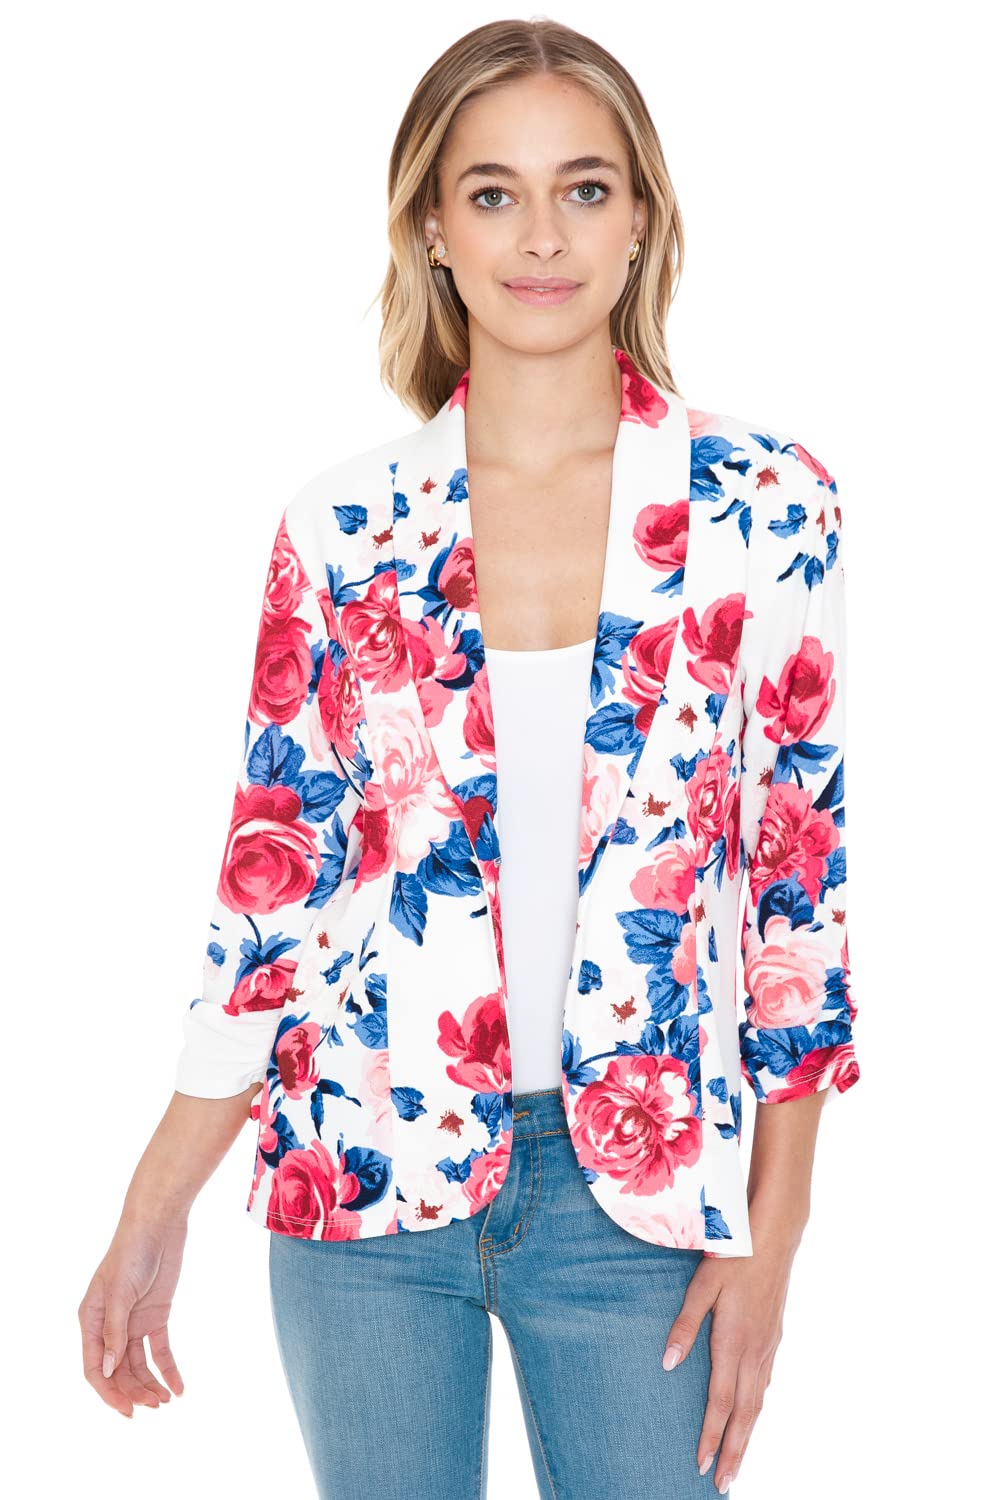 Minefree Womens 34 Ruched Sleeve Lightweight Work Office Blazer Jacket Floral Flower Flivory 2Xl